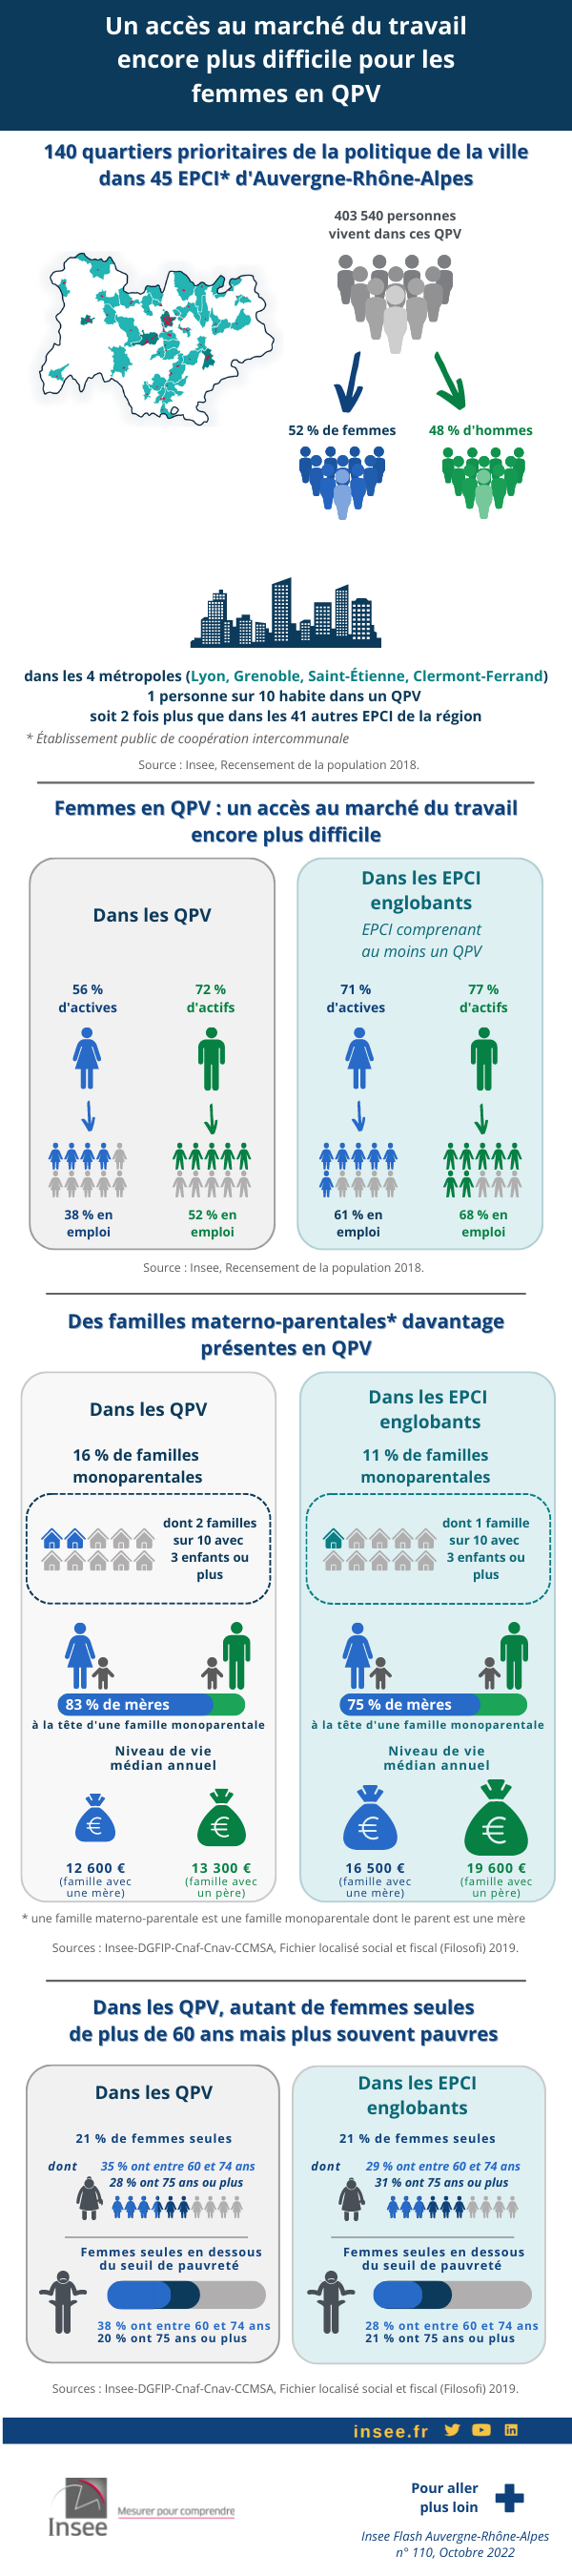 Infographie de : Un accès au marché du travail encore plus difficile pour les femmes en QPV